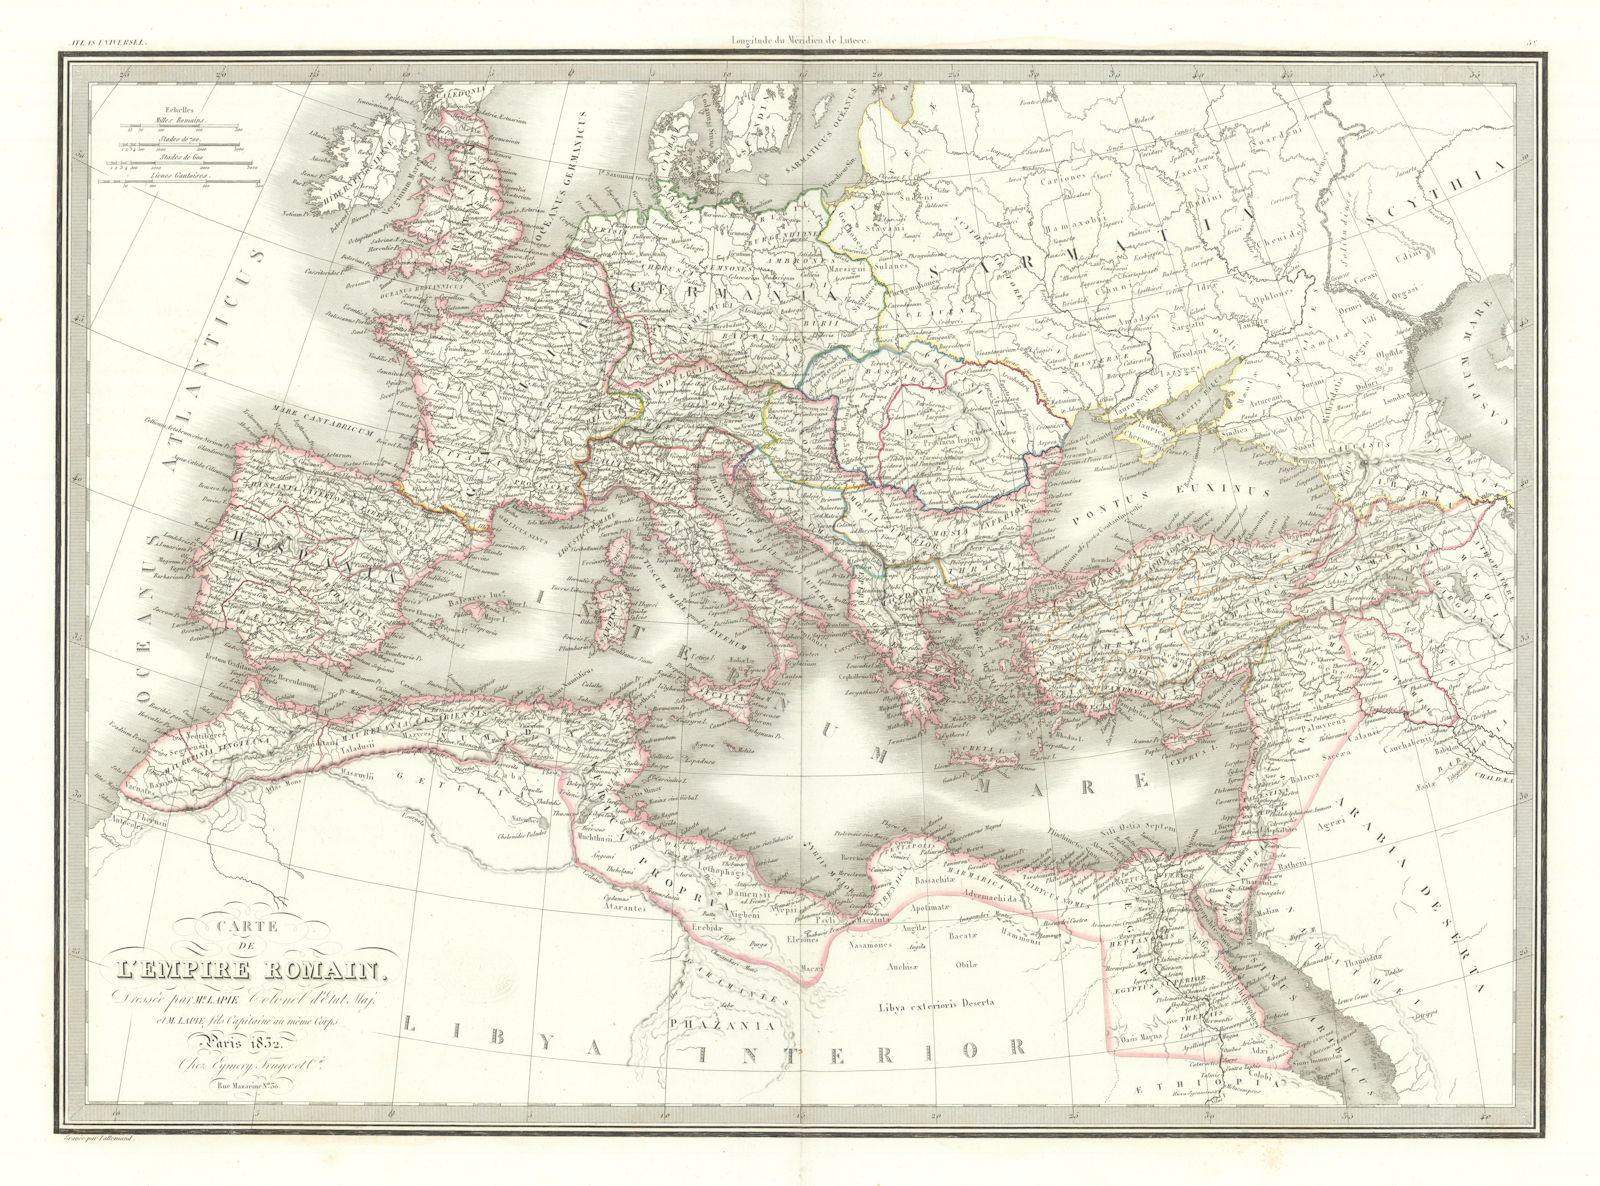 Carte de l'Empire romain. The Roman Empire. LAPIE 1832 old antique map chart